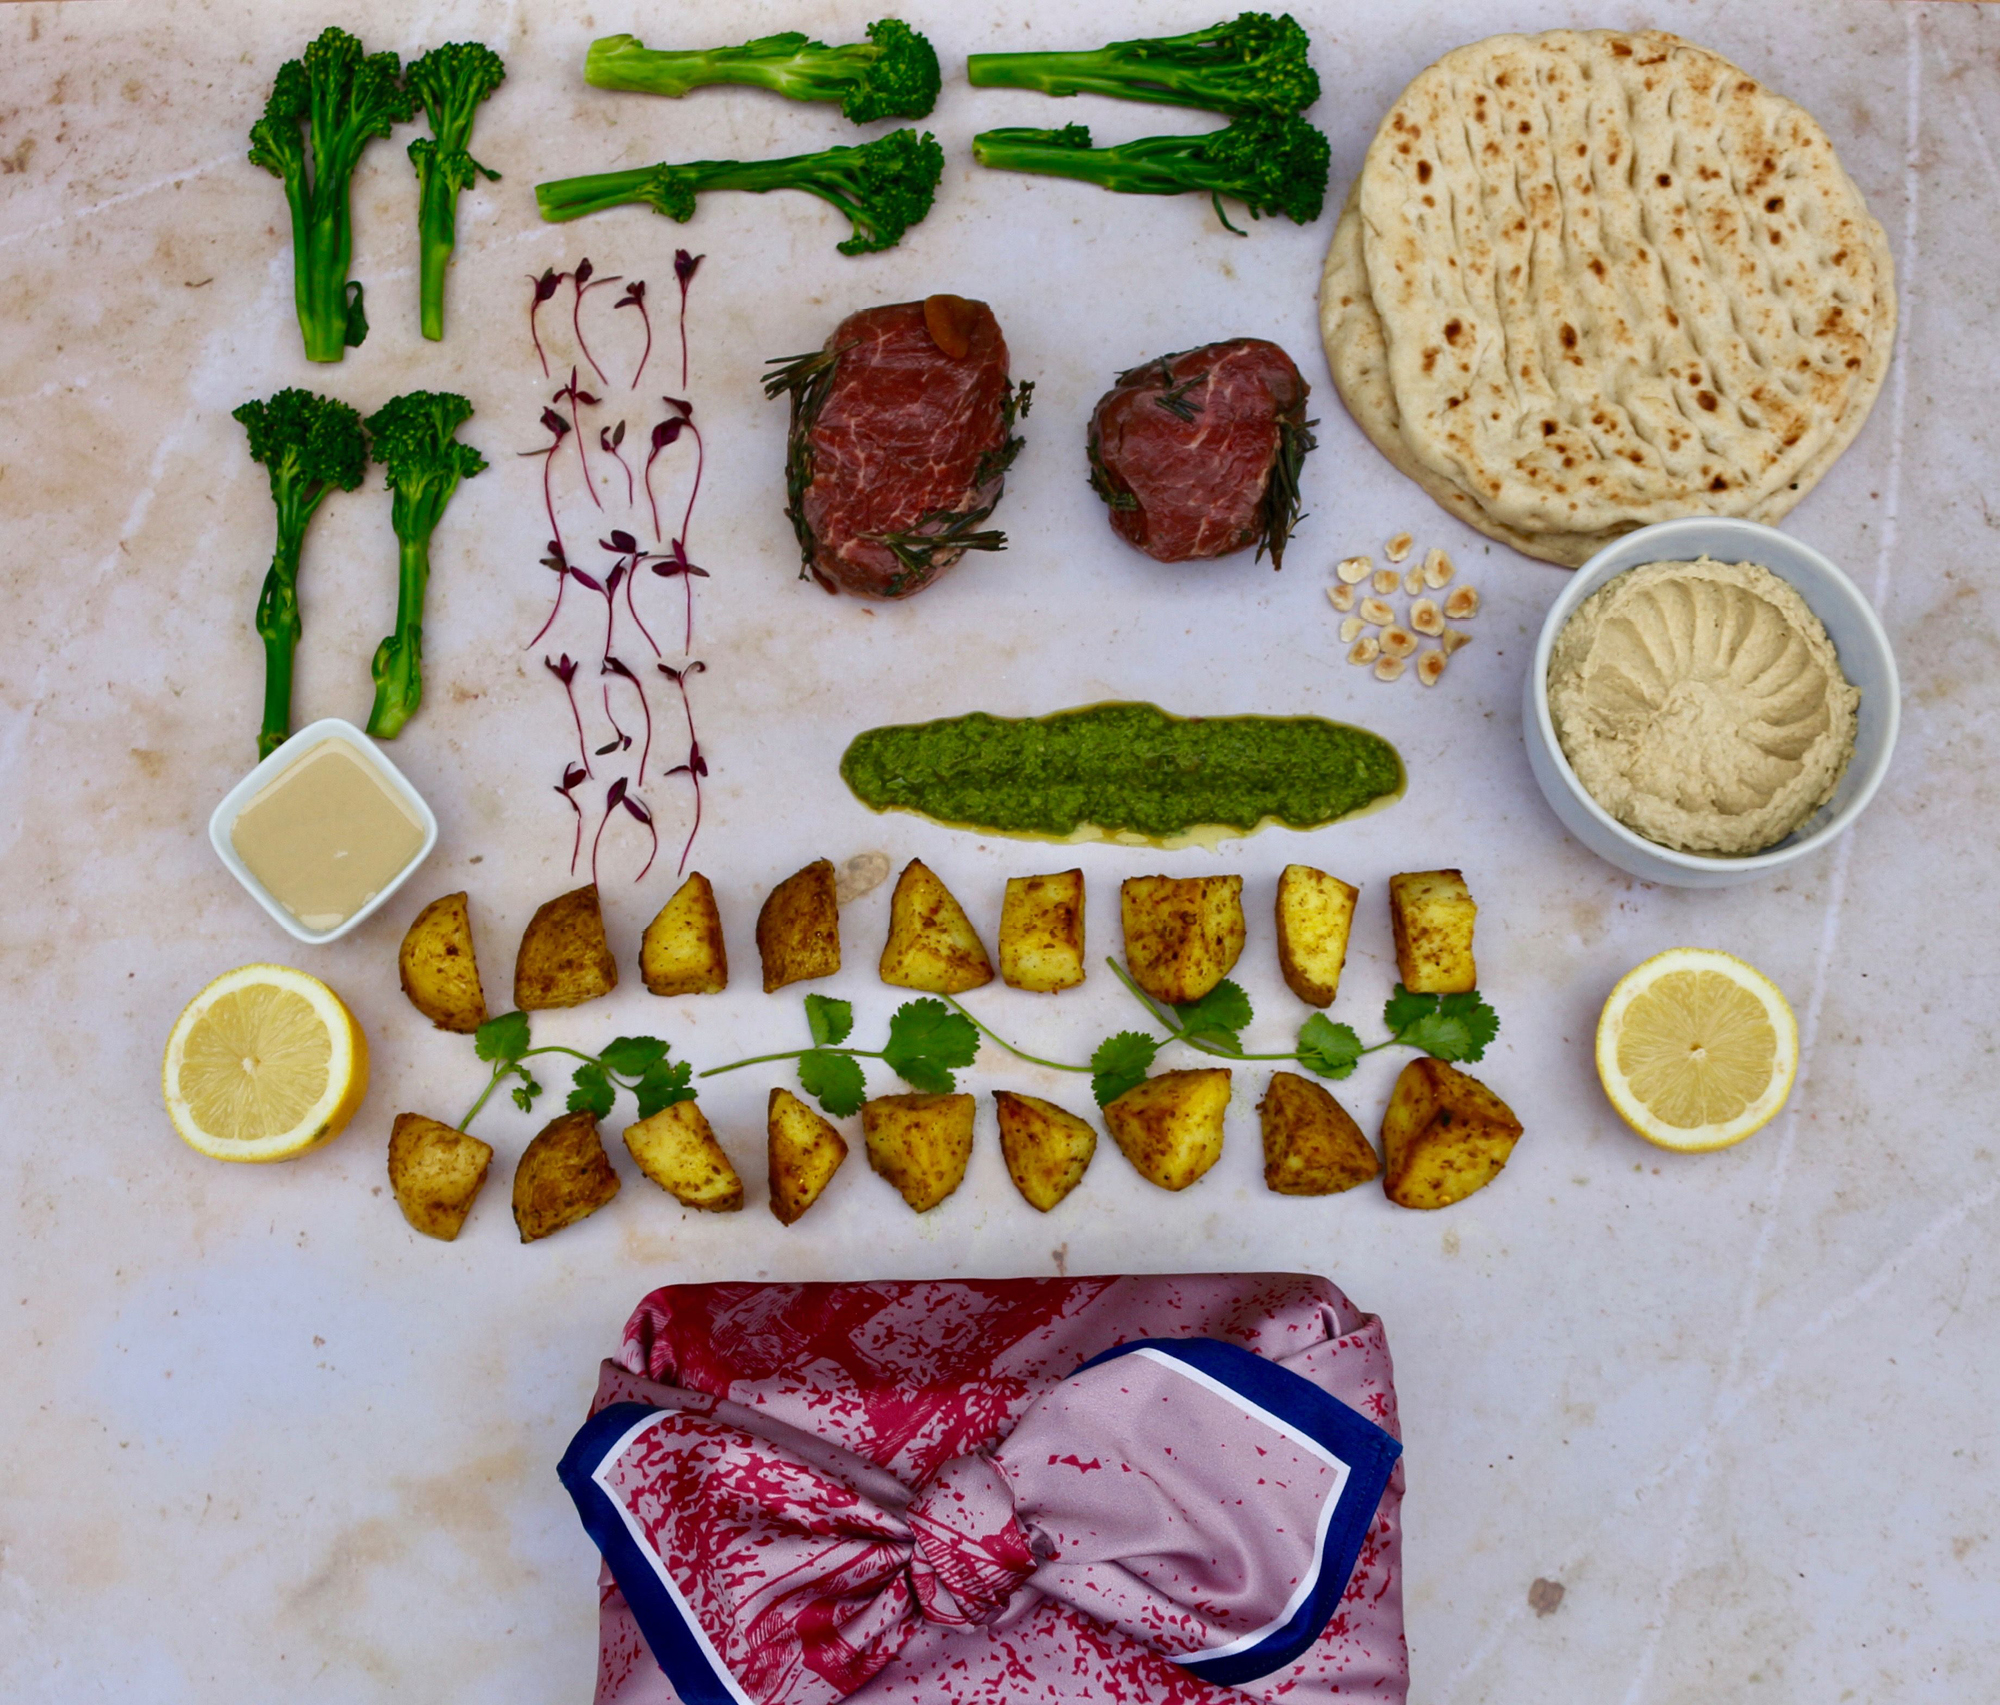 The Ceru beef fillet meal kit